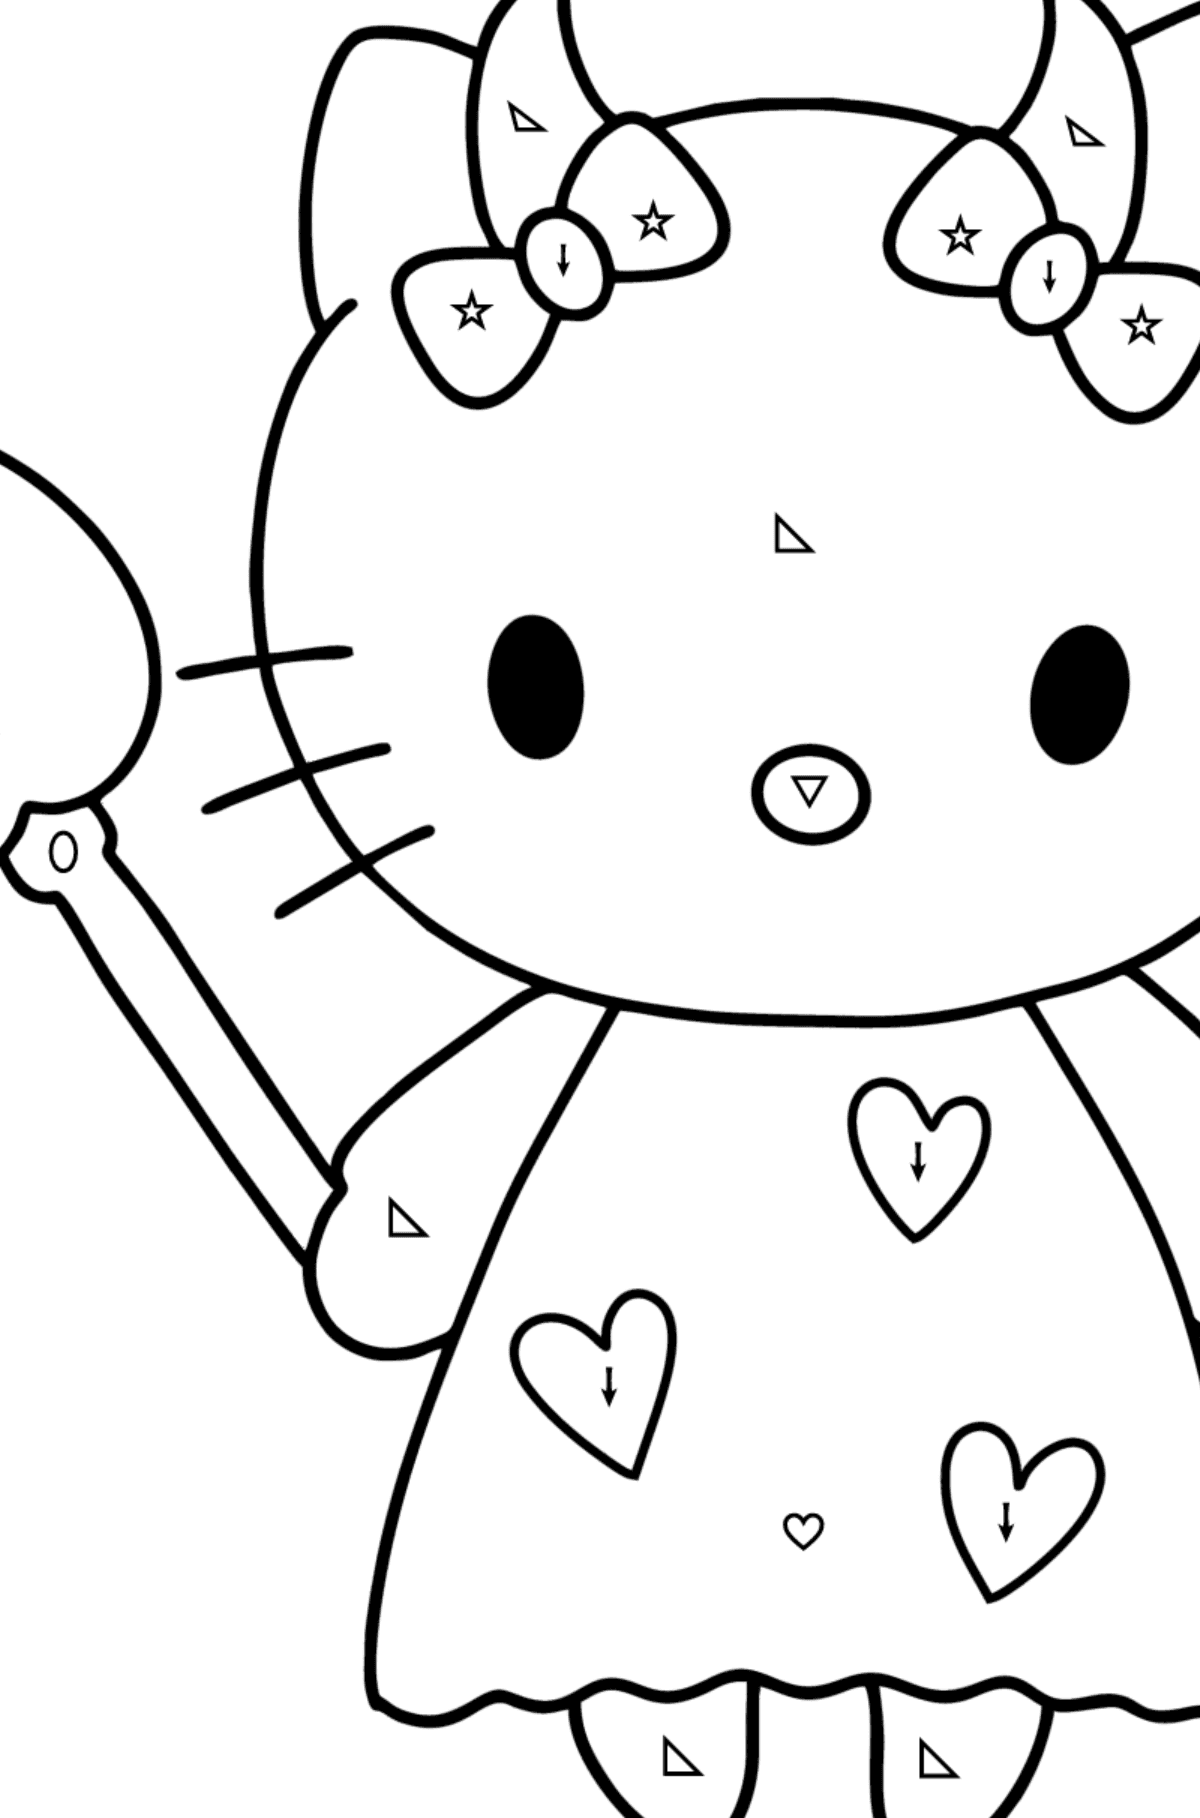 Boyama sayfası Hello Kitty şeytan - Sembollere ve Geometrik Şekillerle Boyama çocuklar için